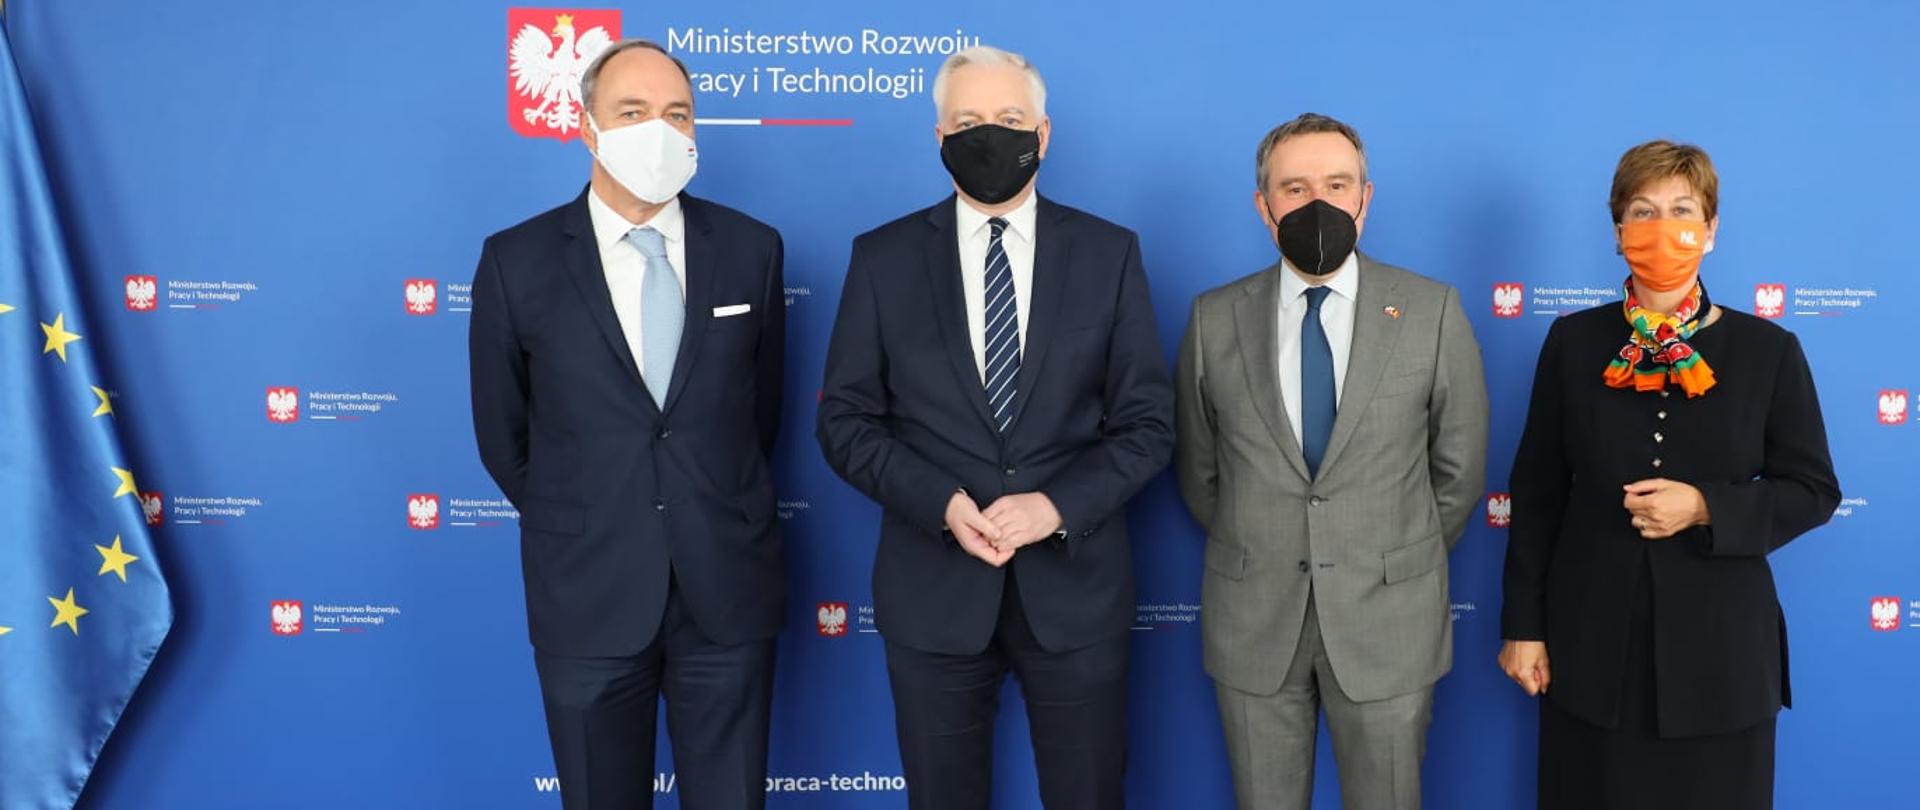 Wicepremier Jarosław Gowin oraz ambasadorowie Belgii, Luksemburga i Niderlandów stoją na tle ścianki z logo MRPiT.